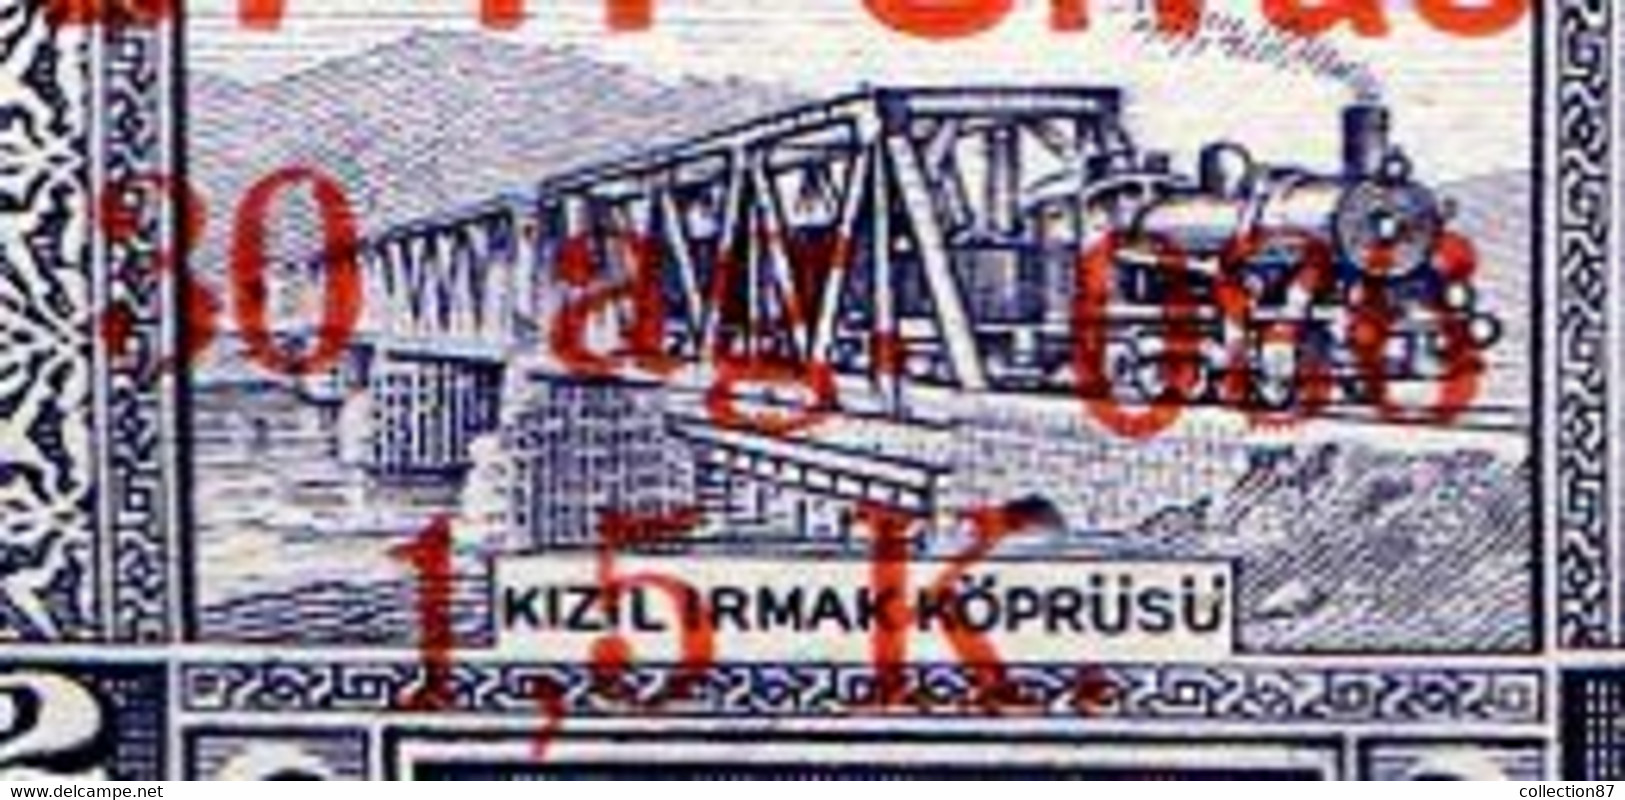 Réf 52Bis  -- TURQUIE --  SURCHARGE 930 RENVERSÉE N° 776 ** MNH - TURKEY - Unused Stamps